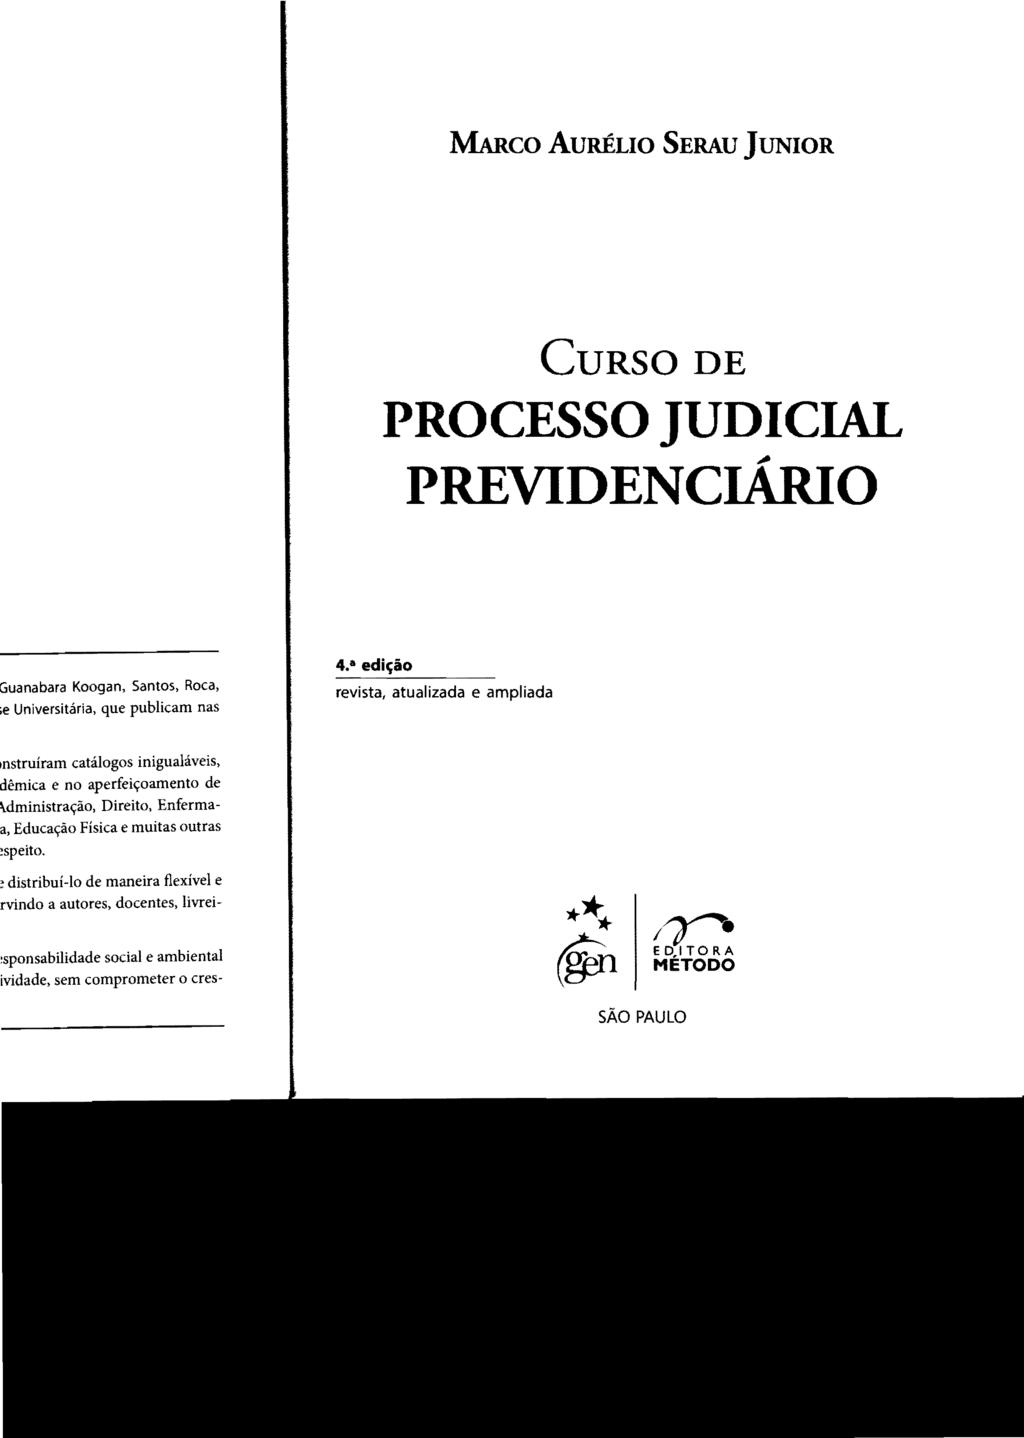 MARco AURÉLIO SERAU JUNIOR CURSO DE PROCESSO JUDICIAL PREVIDENCIÁRIO 4.